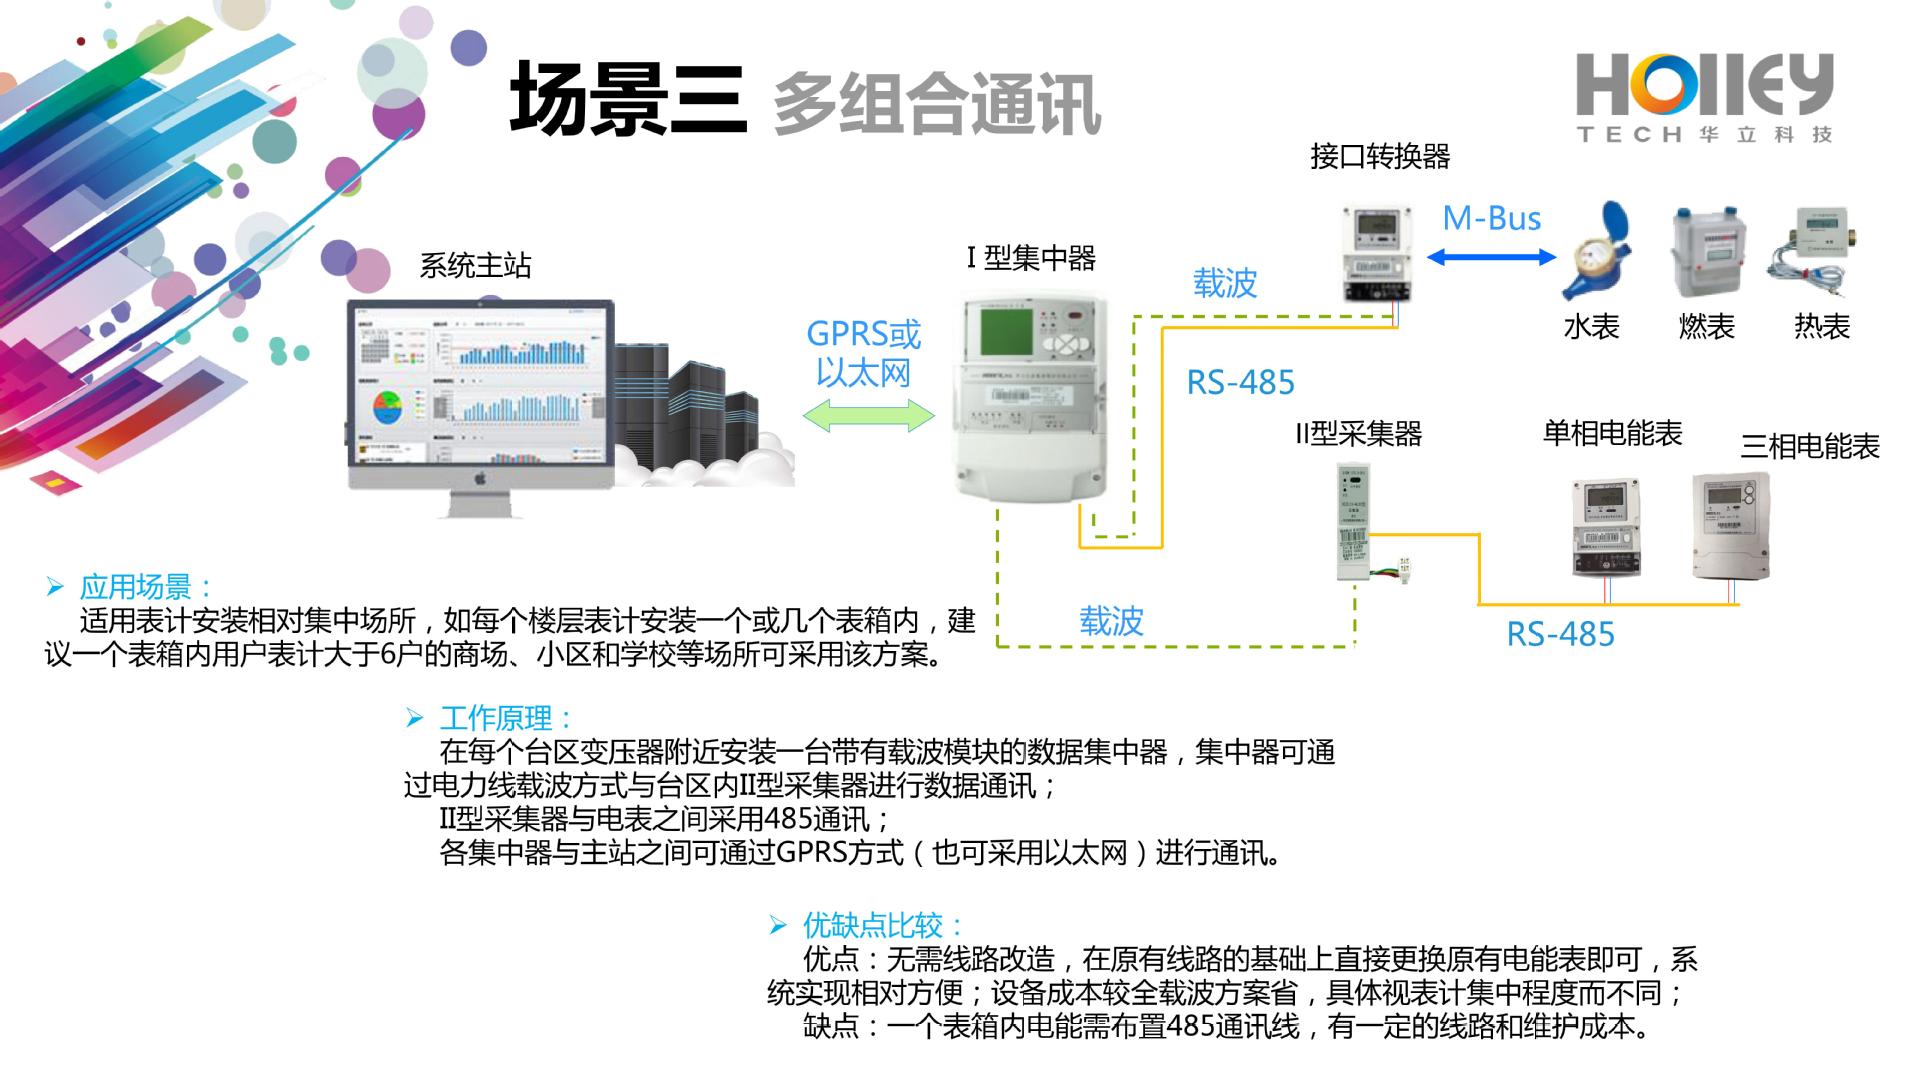 华立能源管理系统云平台 远程抄表系统微信缴费 远程拉闸水电一起